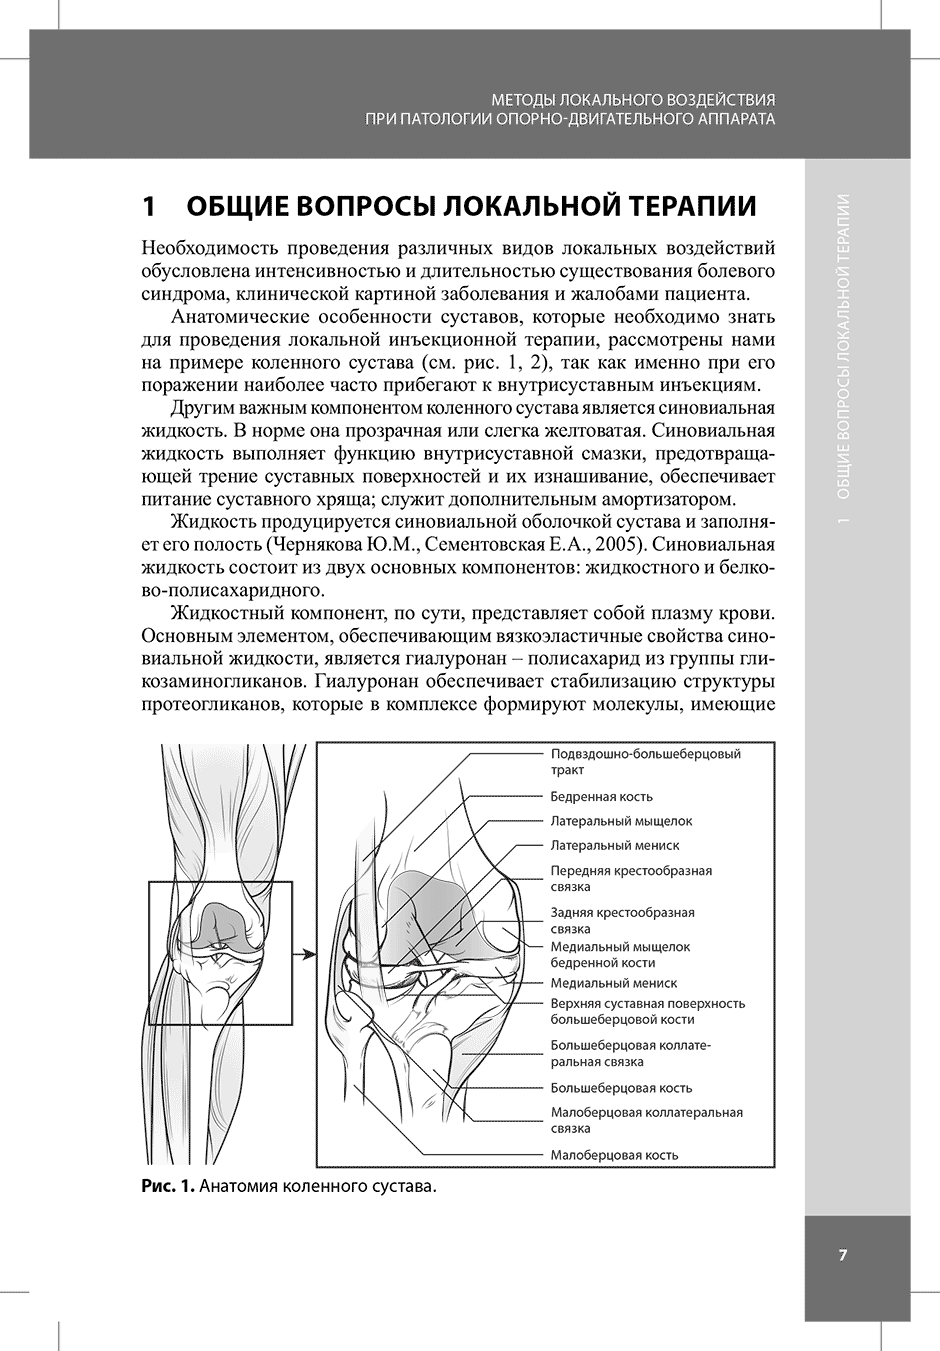 Рис. 1. Анатомия коленного сустава